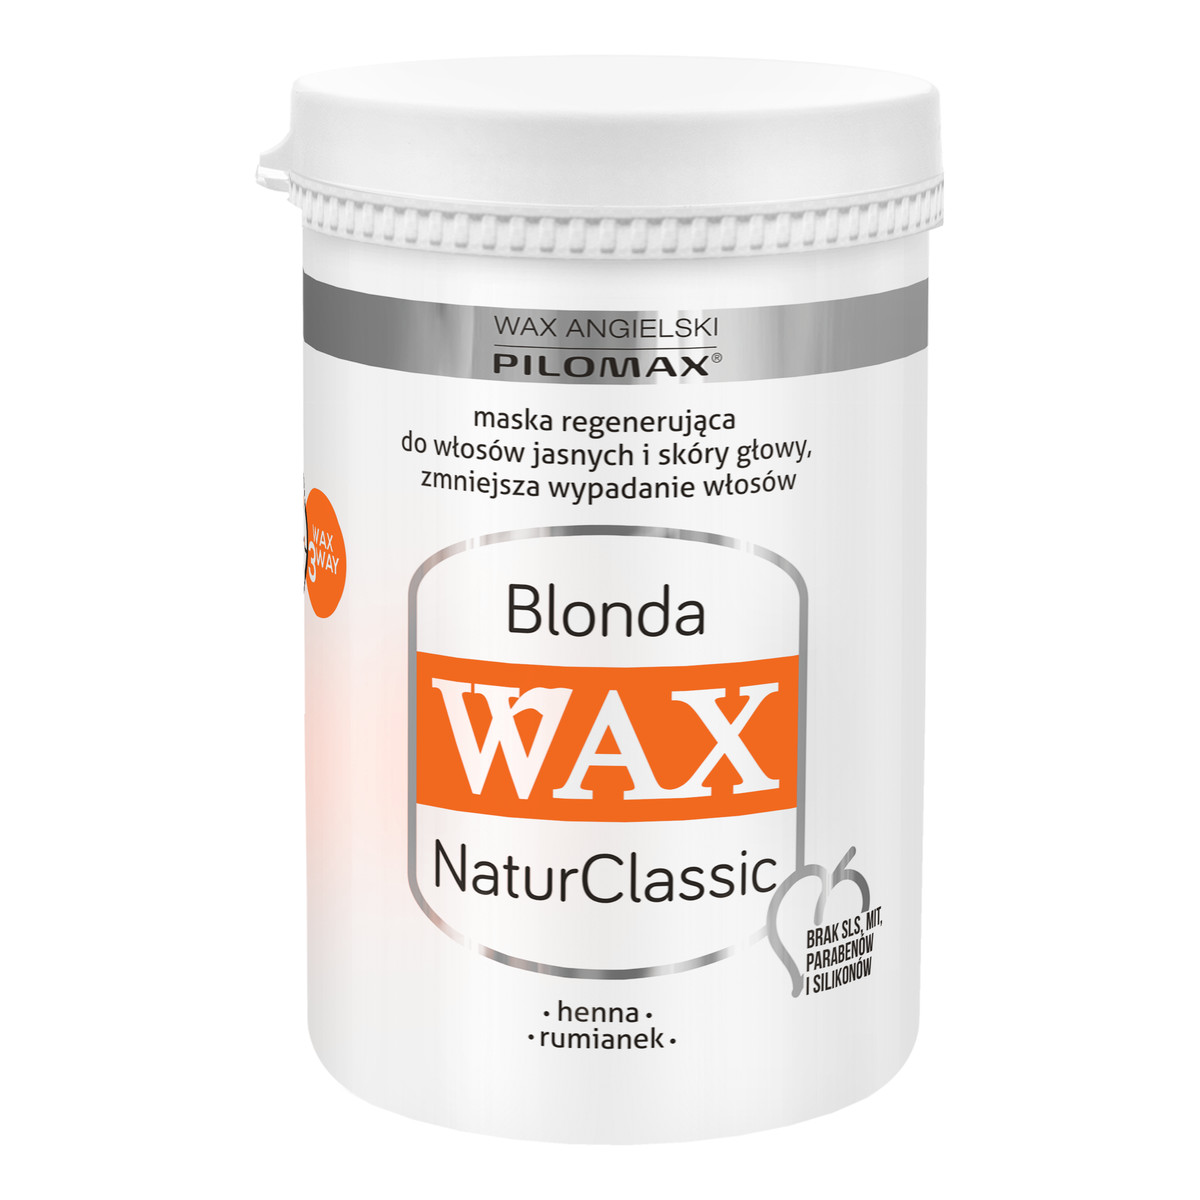 Pilomax Wax Blonda Natur Classic Maska Regenerująca Do Włosów Jasnych 480ml